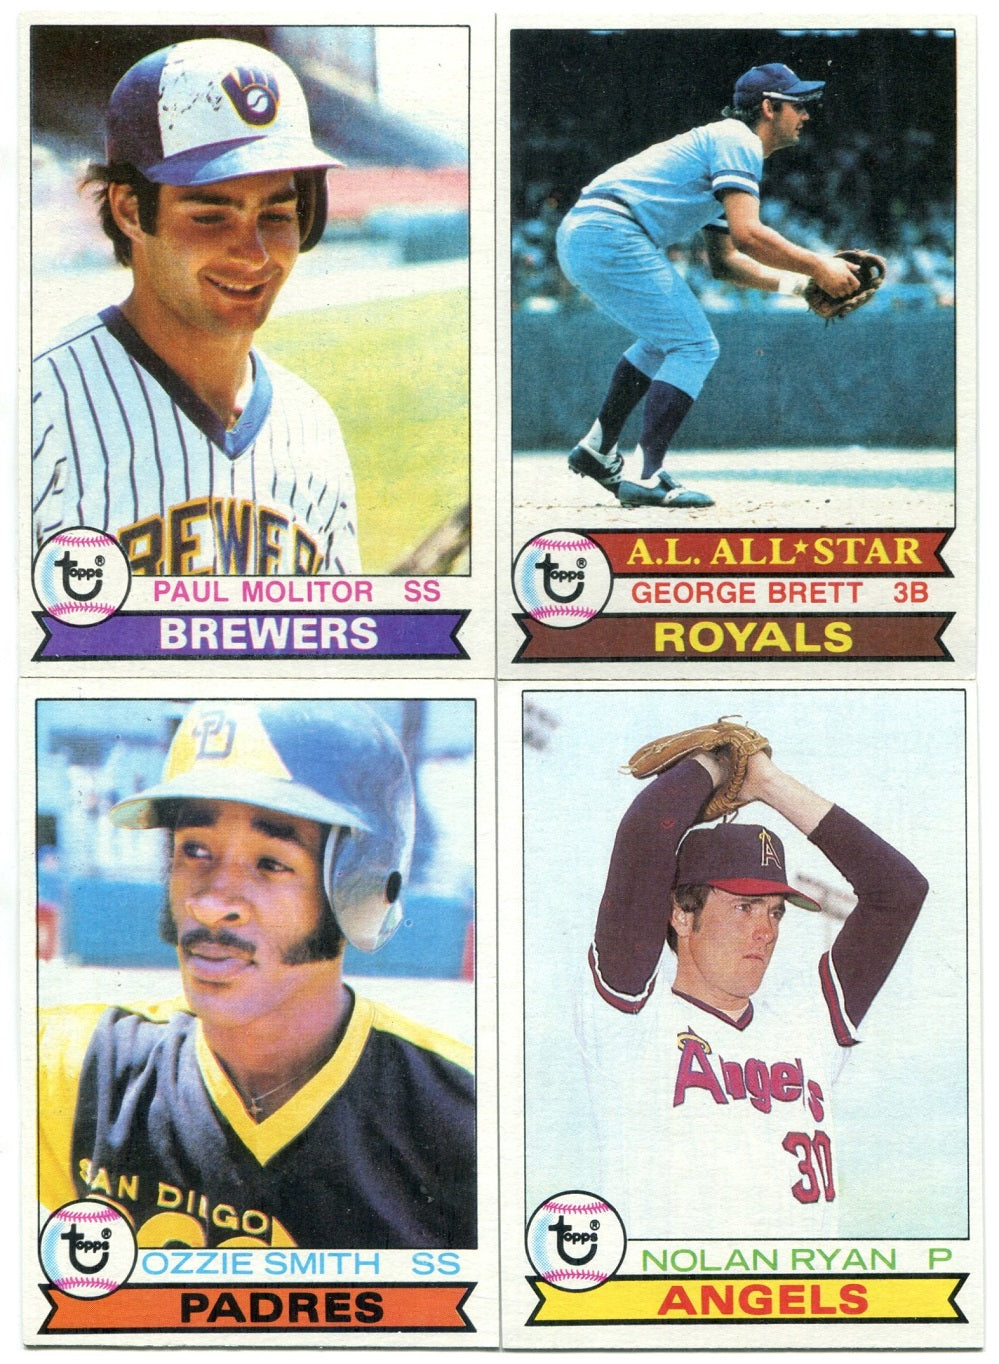 1979 Topps Baseball Complete Set NM (726) (23-135)